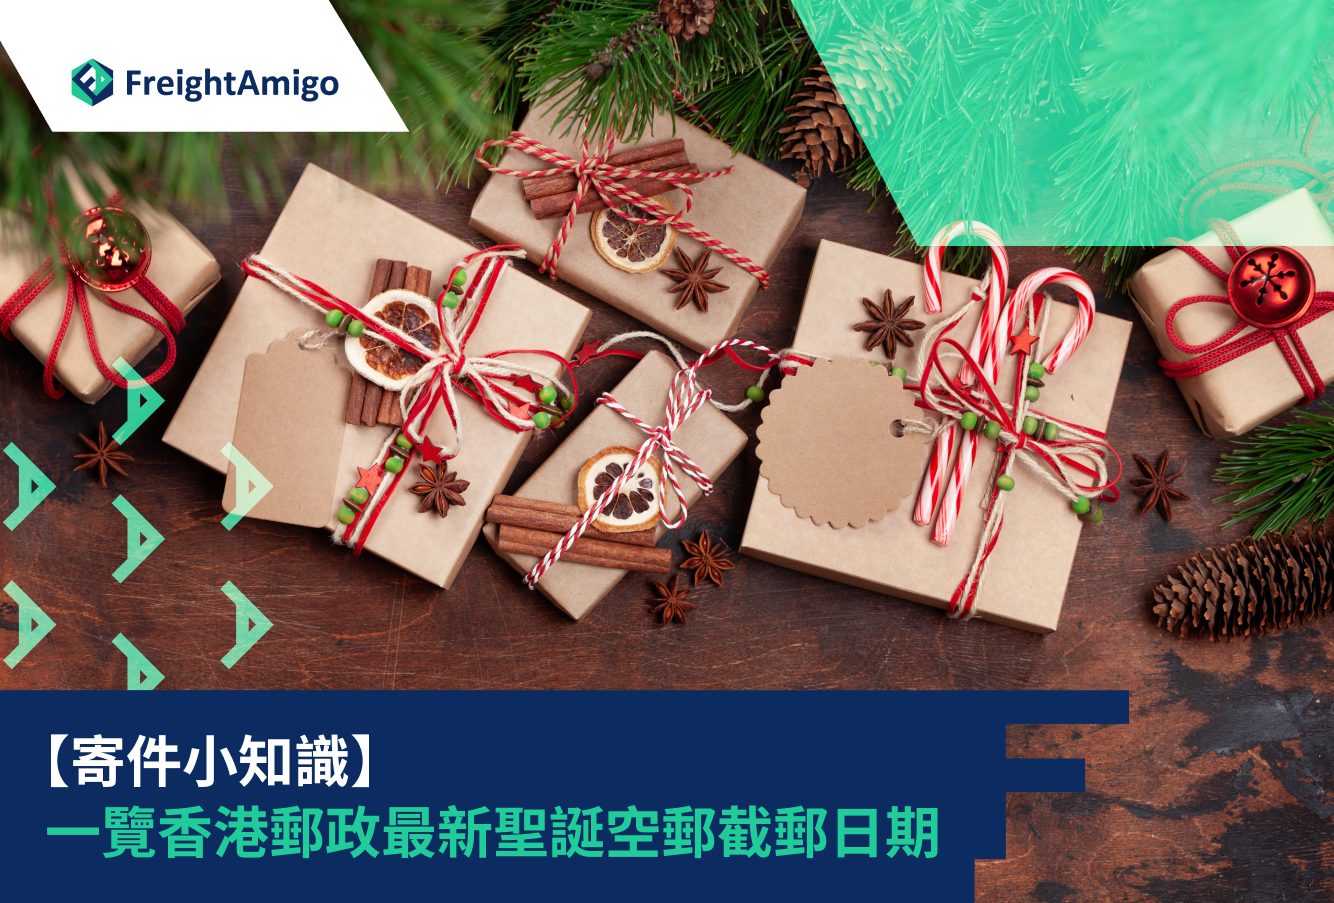 【寄件小知識】一覽香港郵政最新聖誕空郵截郵日期